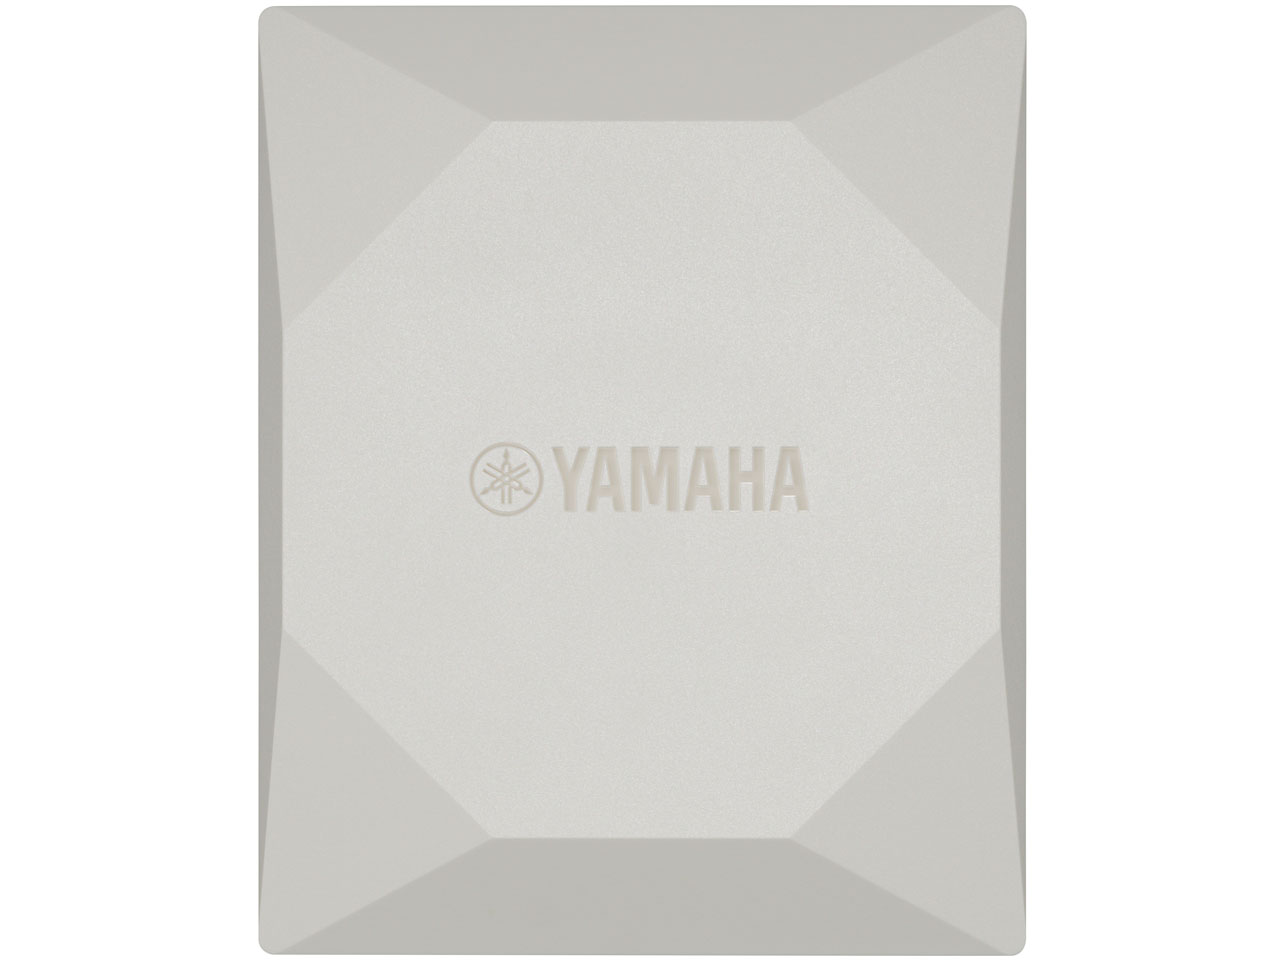 WLX202: 進化した YAMAHA の無線LAN アクセスポイント | Rabbit Note